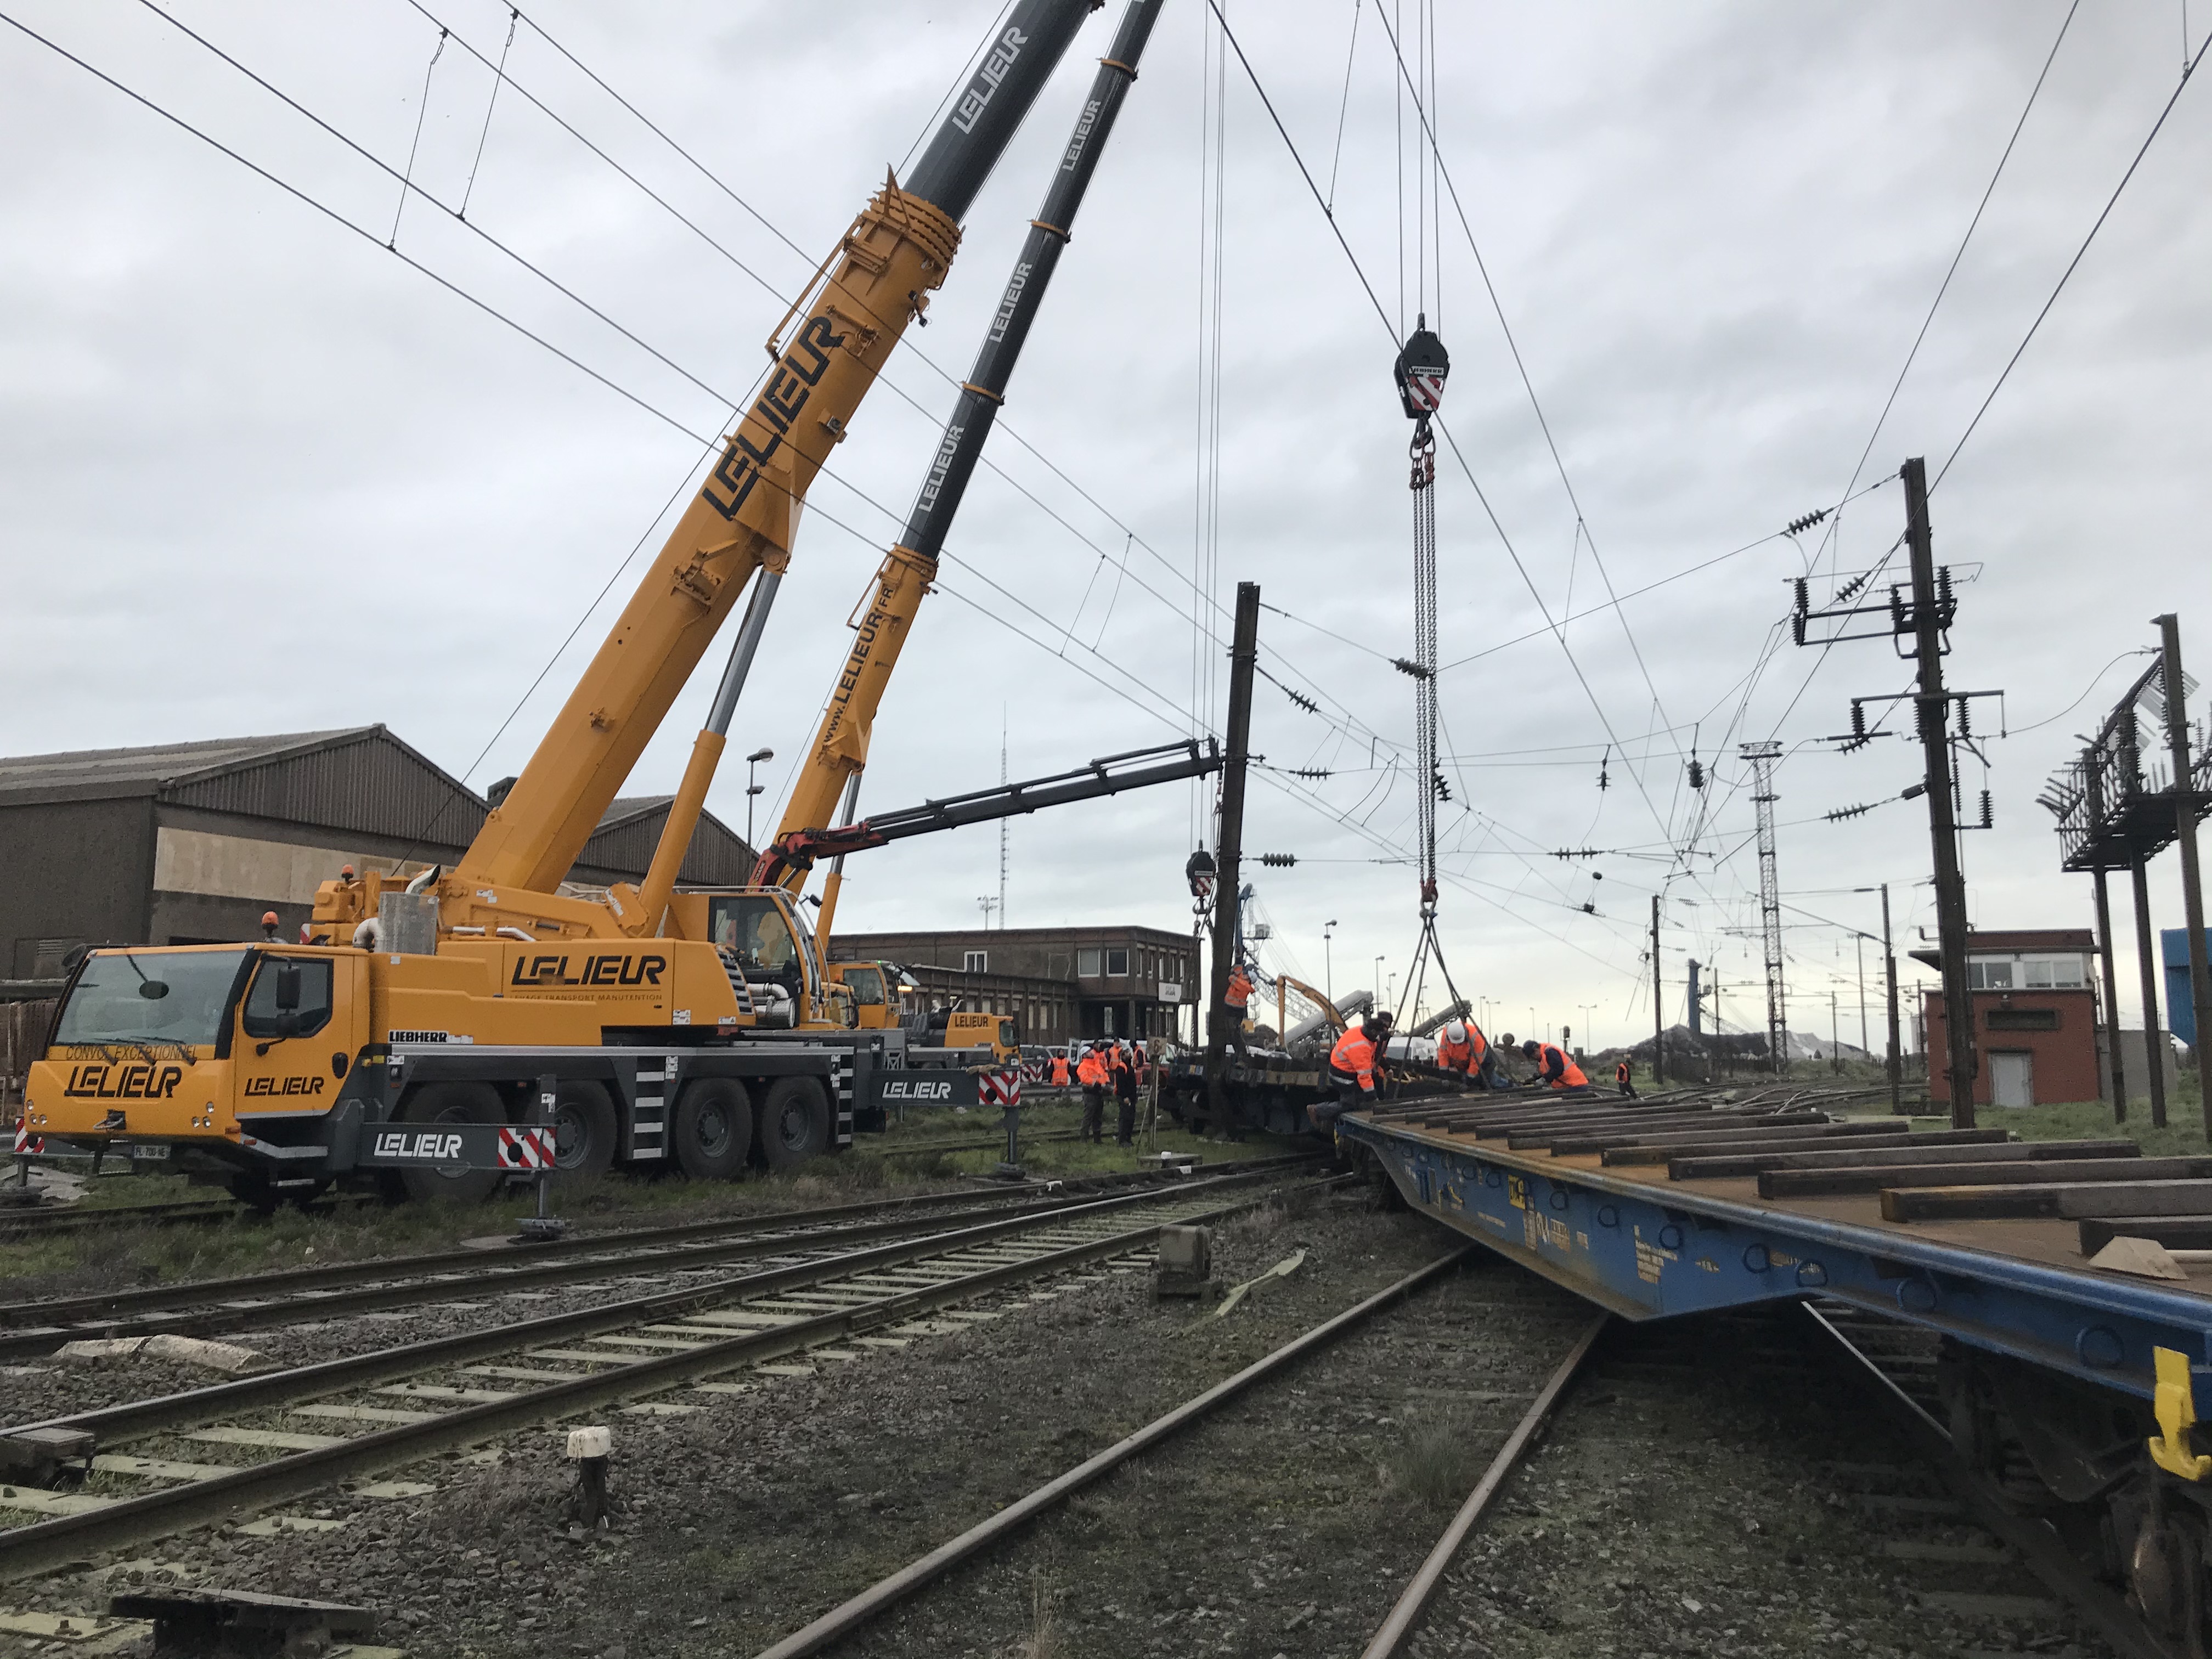 Elinguage, levage et guidage d'urgence pour le replacement de wagons sur rails à Dunkerque dans le Nord